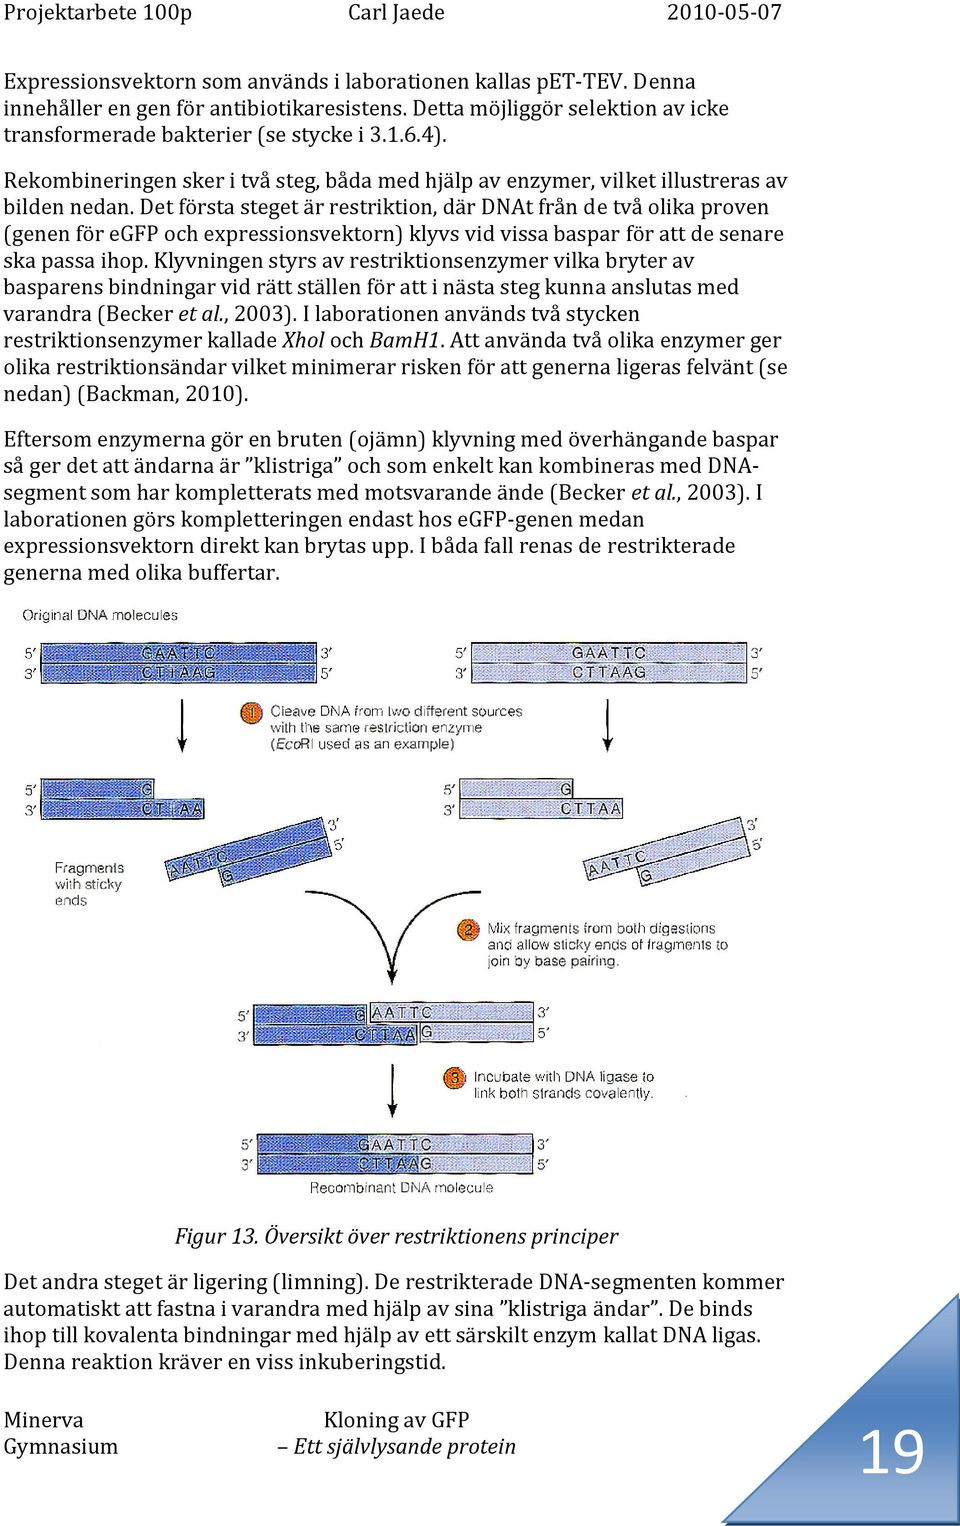 Det första steget är restriktion, där DNAt från de två olika proven (genen för egfp och expressionsvektorn) klyvs vid vissa baspar för att de senare ska passa ihop.